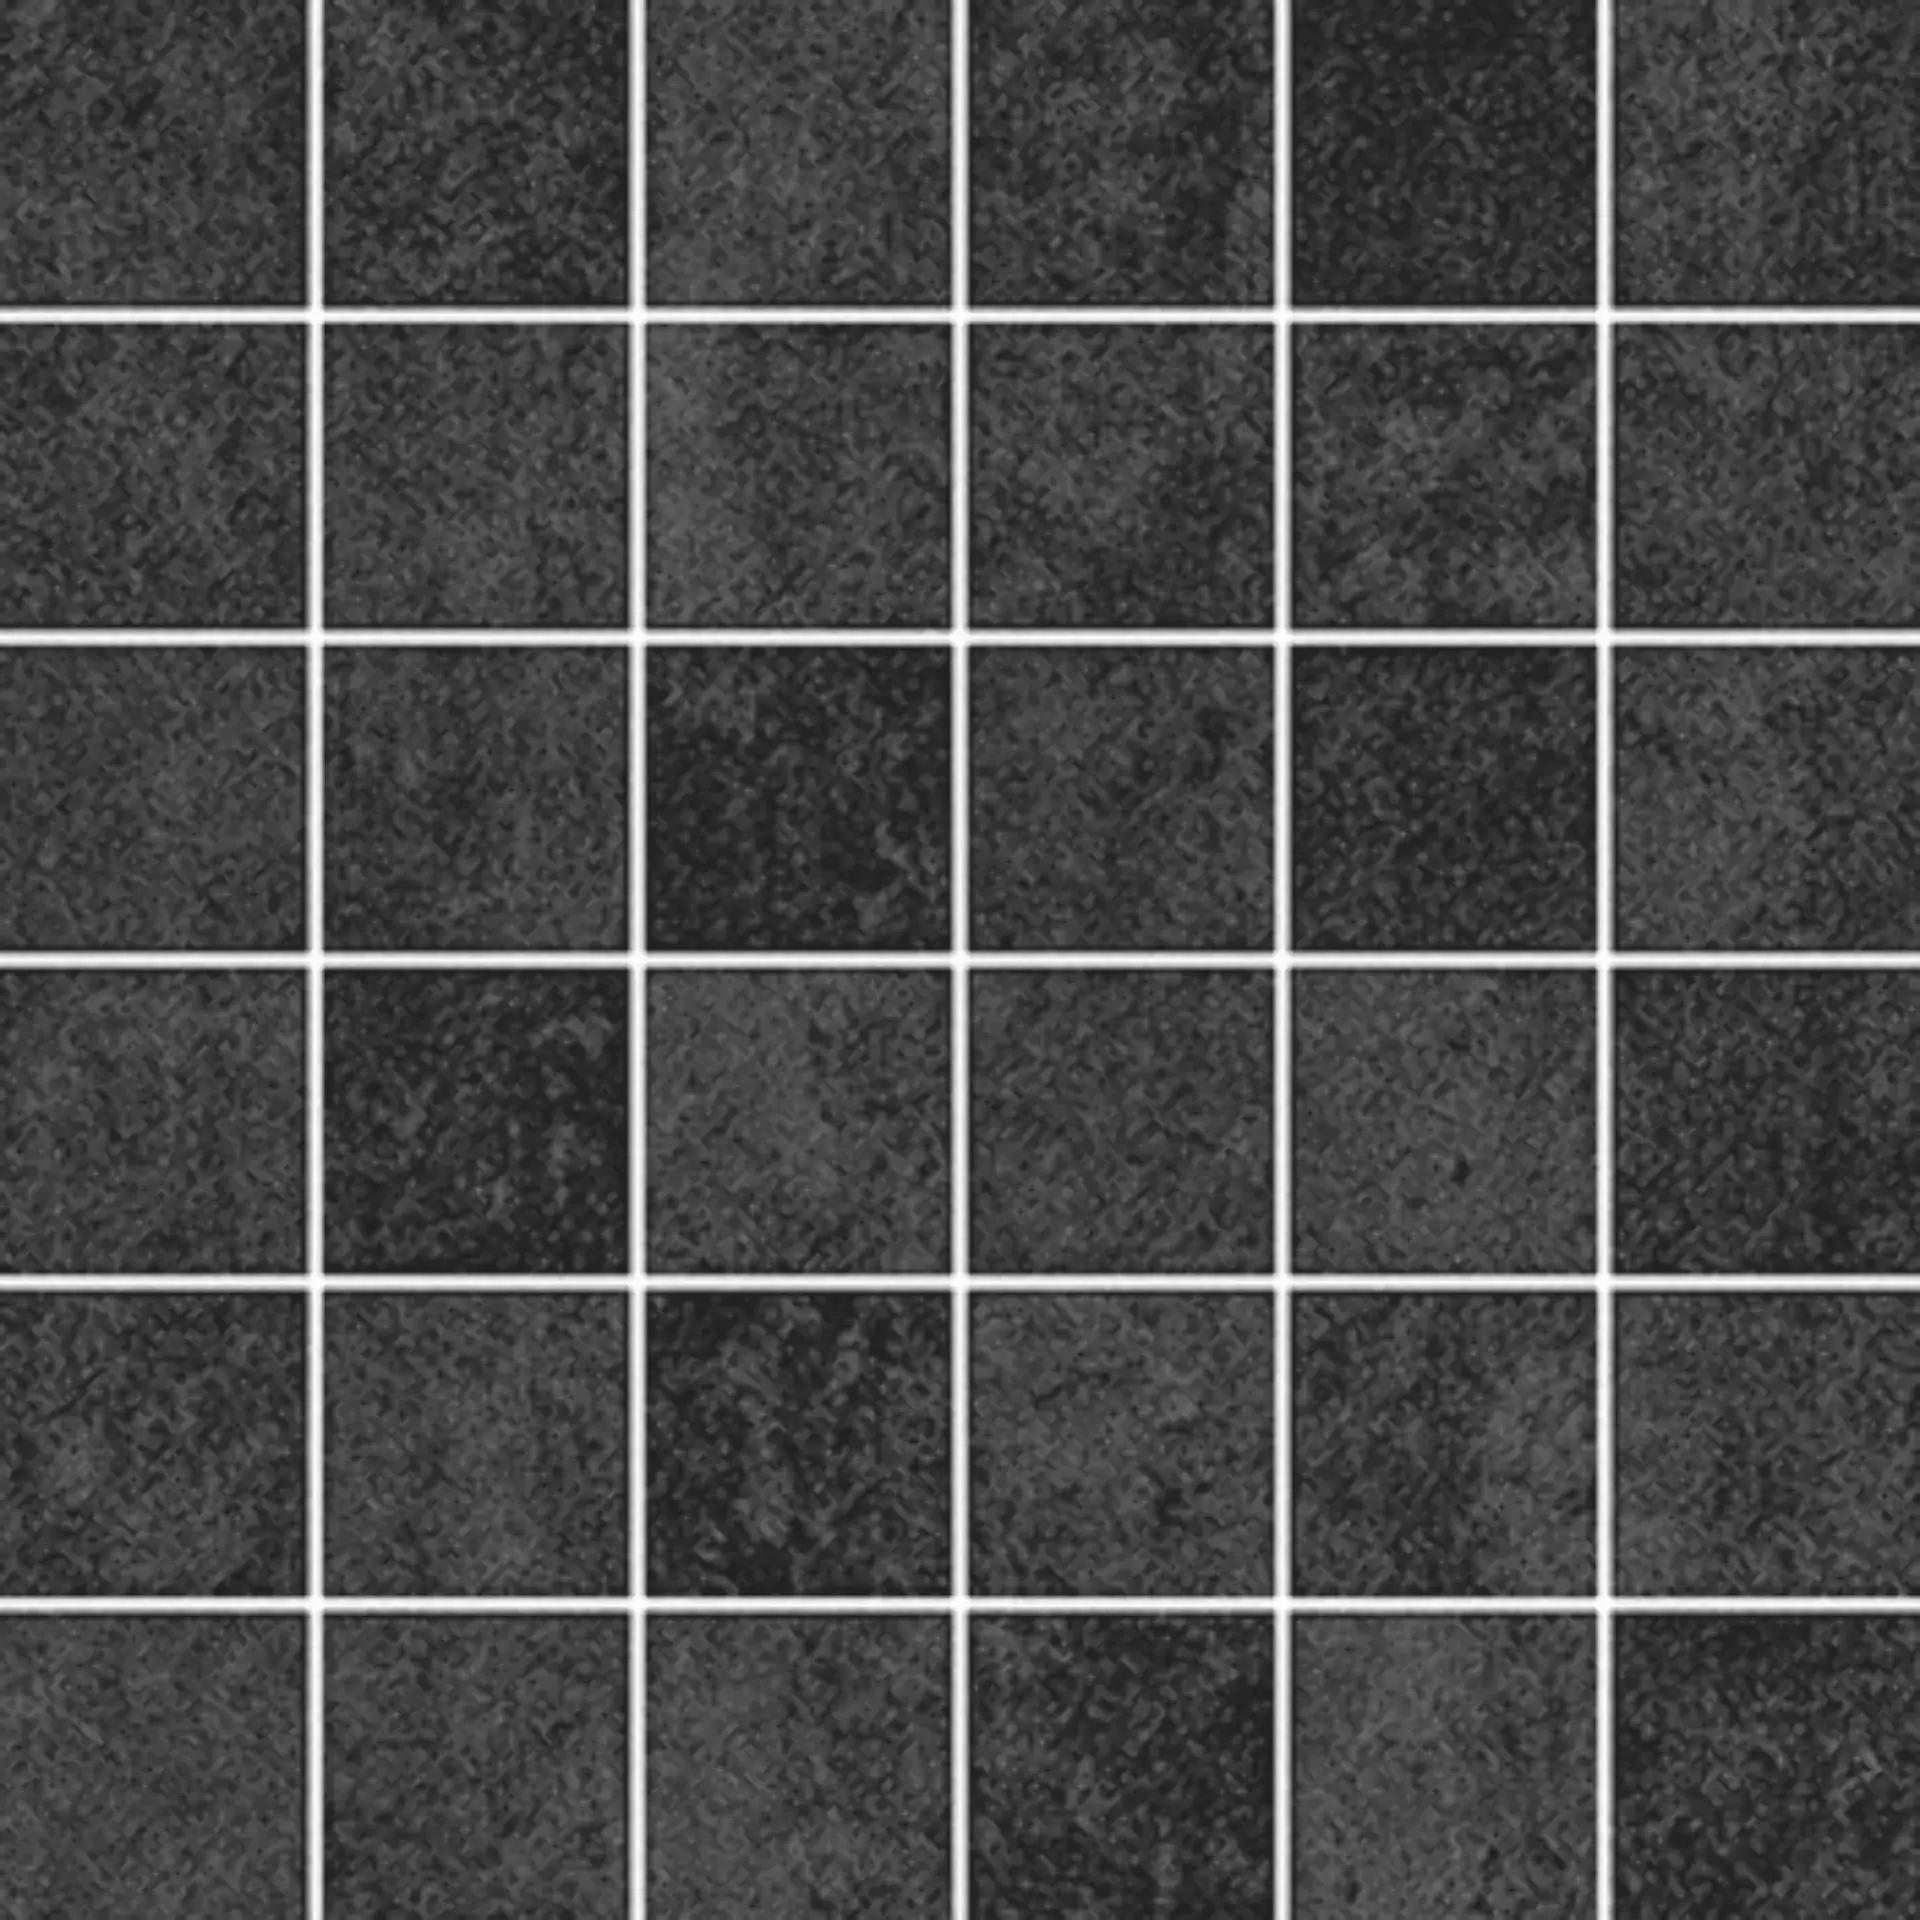 Wandfliese,Bodenfliese Villeroy & Boch Daytona Dark Grey Matt Dark Grey 2706-BP90 matt 5x5cm Mosaik (5x5) rektifiziert 6mm